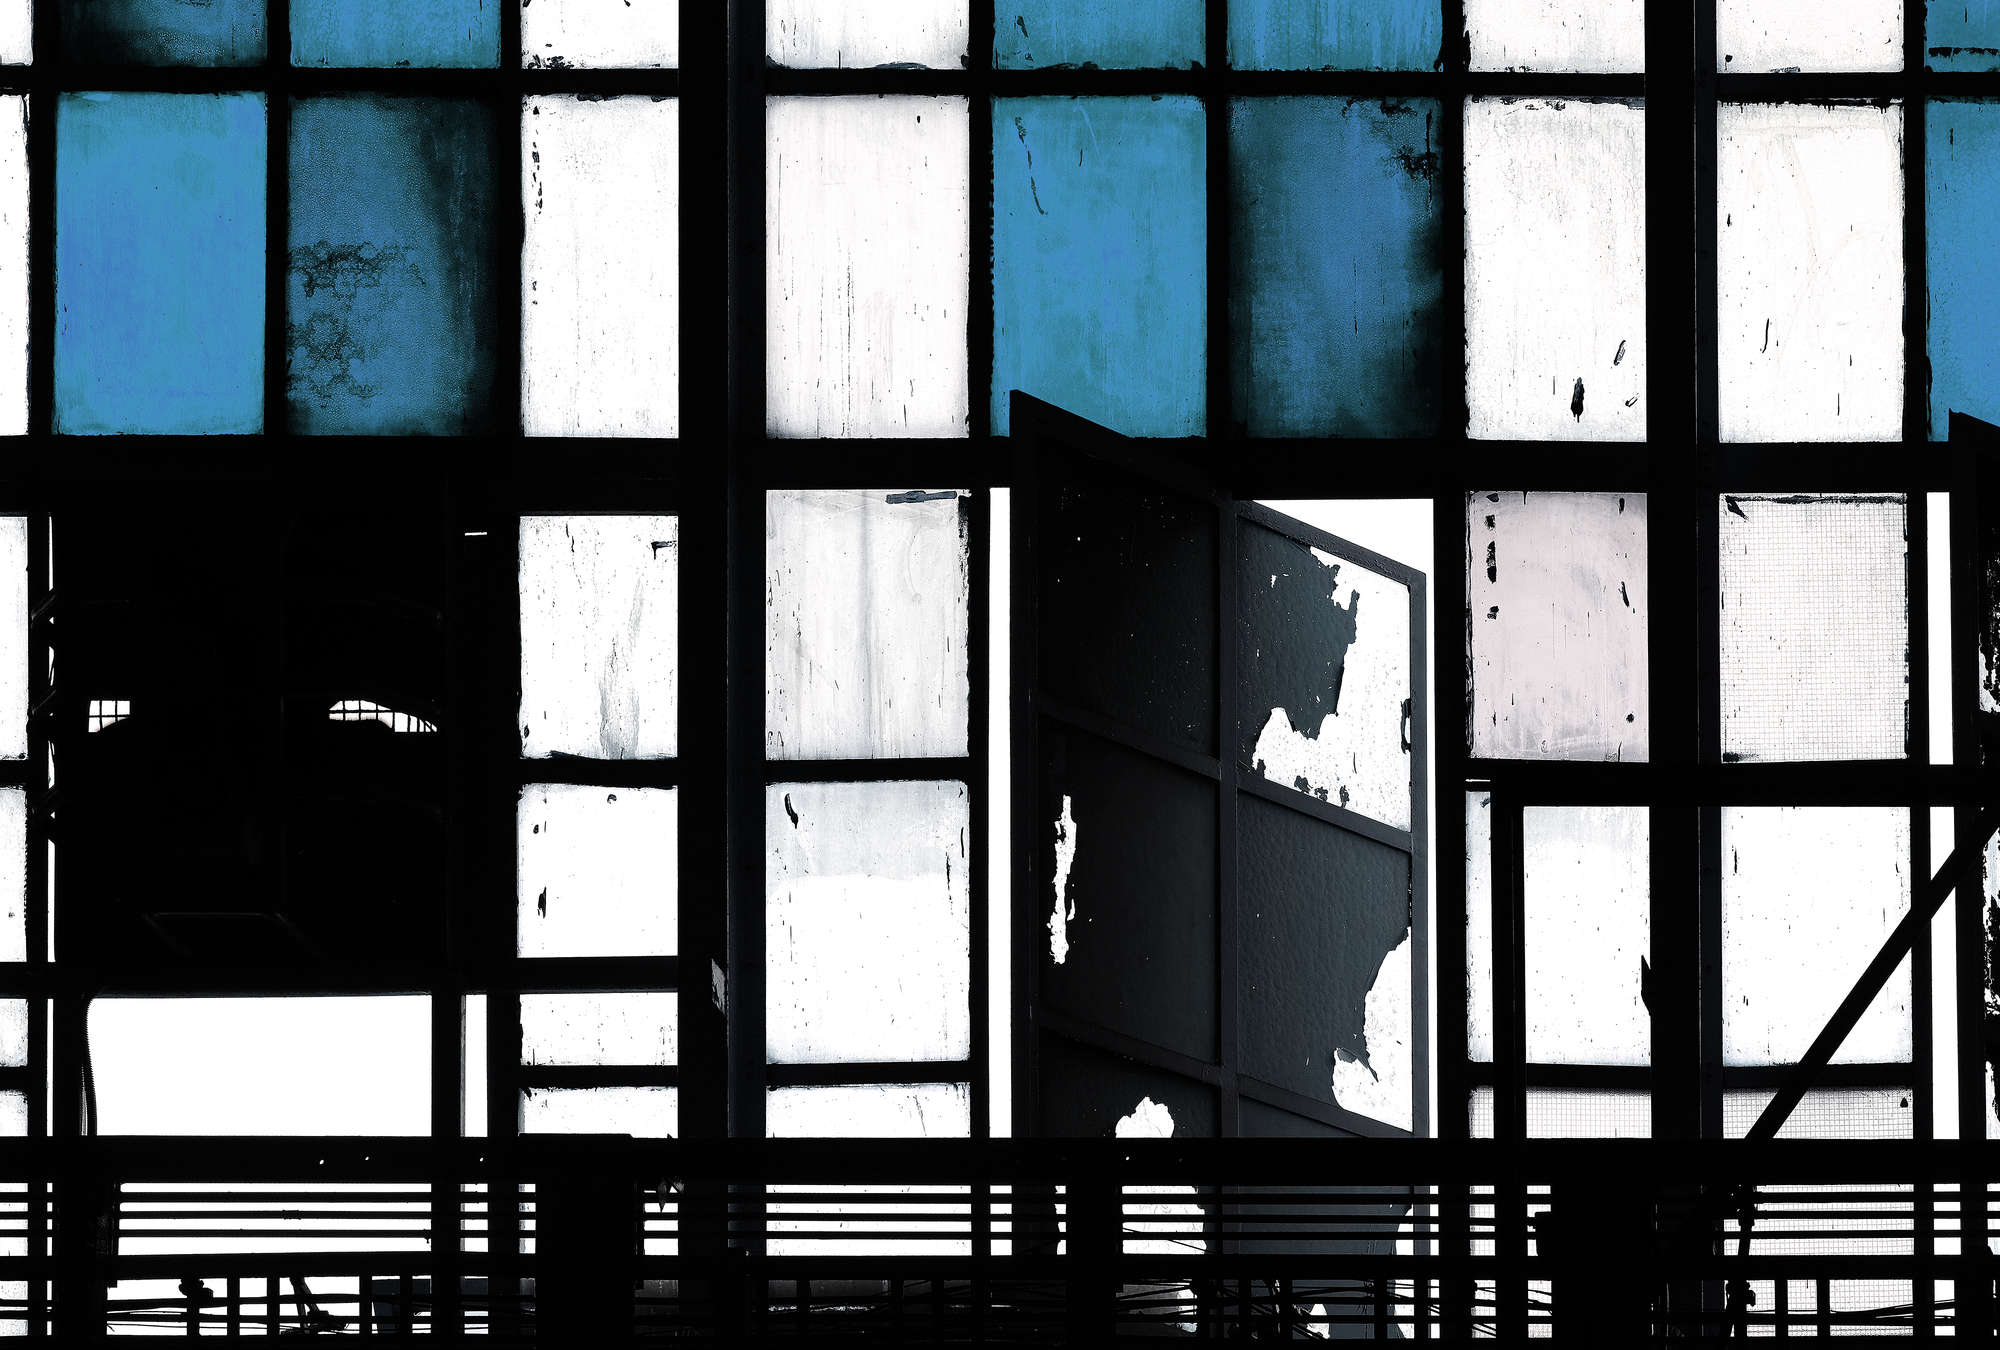             Bronx 3 - Fototapete, Loft mit Buntglas-Fenstern – Blau, Schwarz | Mattes Glattvlies
        